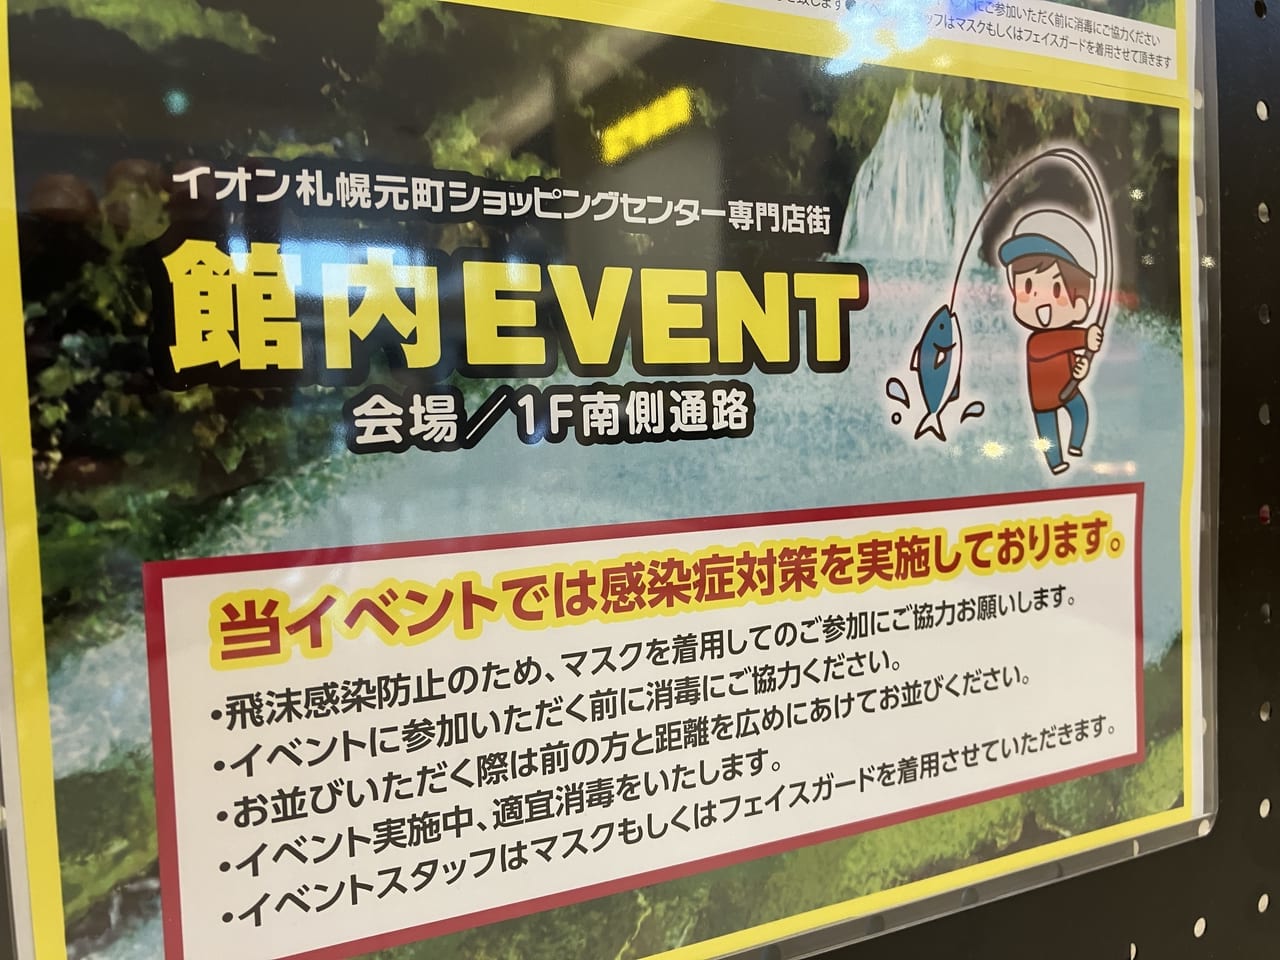 「イオン札幌元町店」でフィッシングチャレンジのイベントが開かれるようですよ！